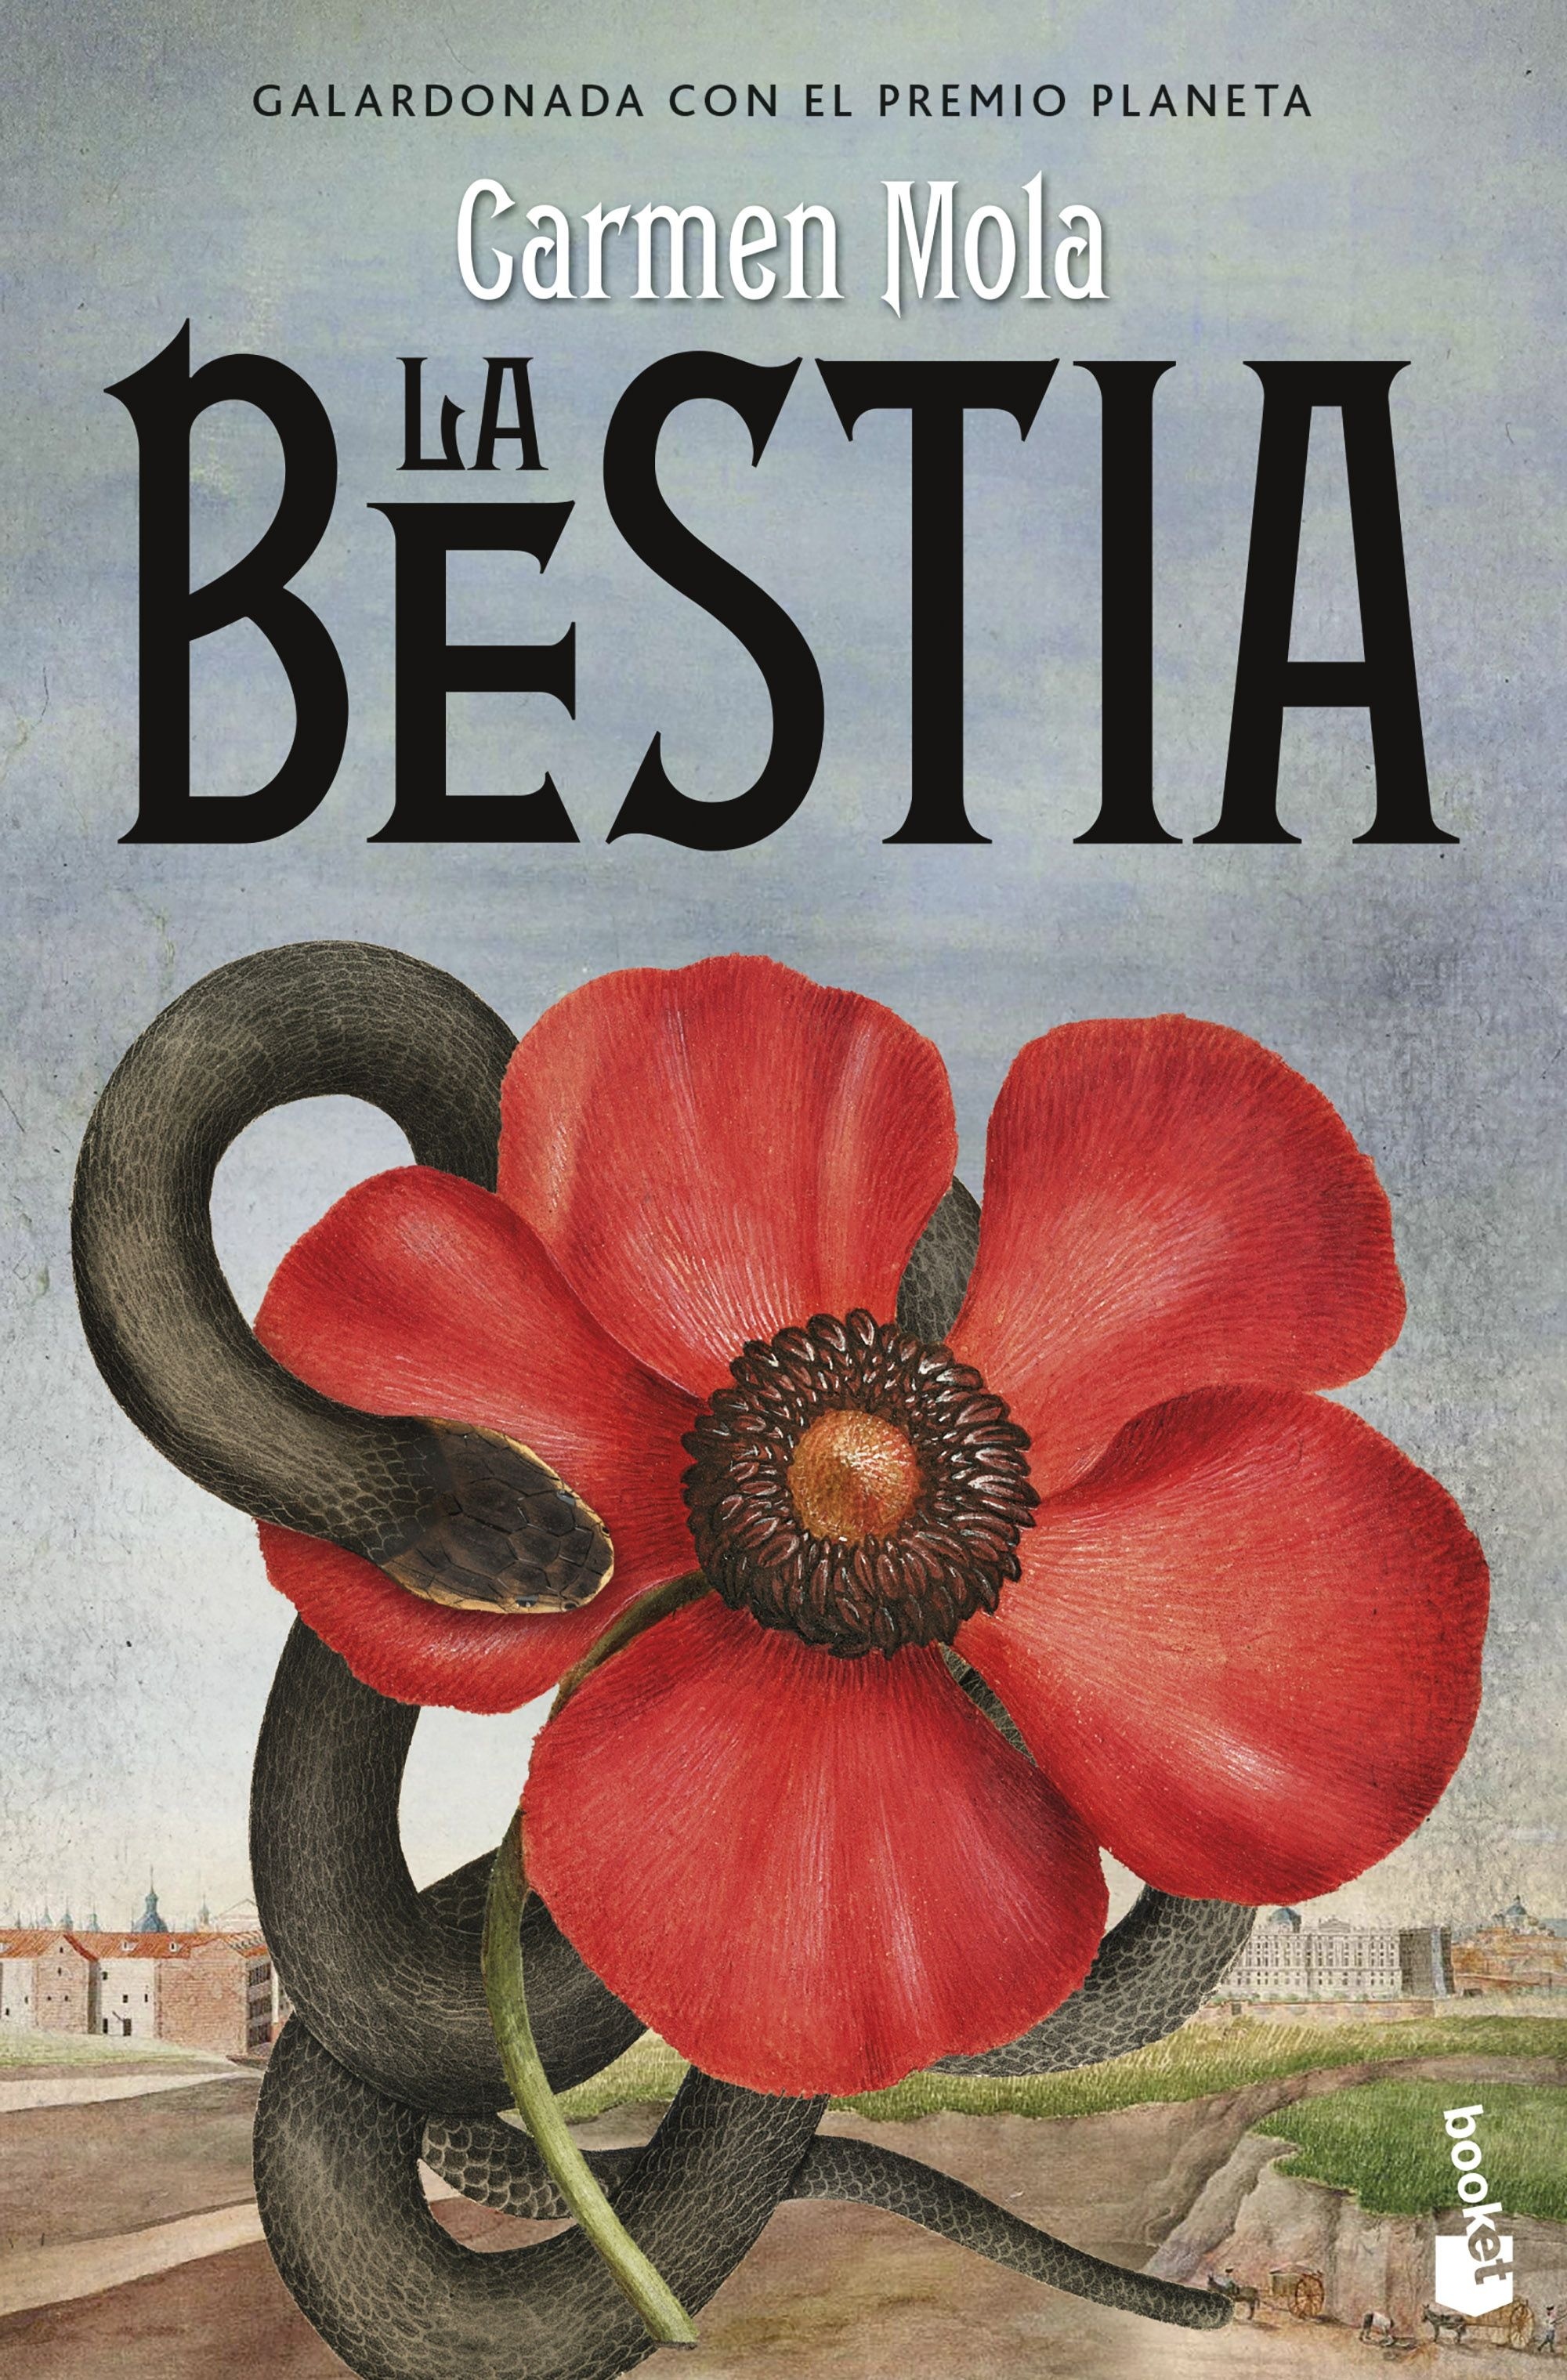 Bestia, La "Premio Planeta 2021"